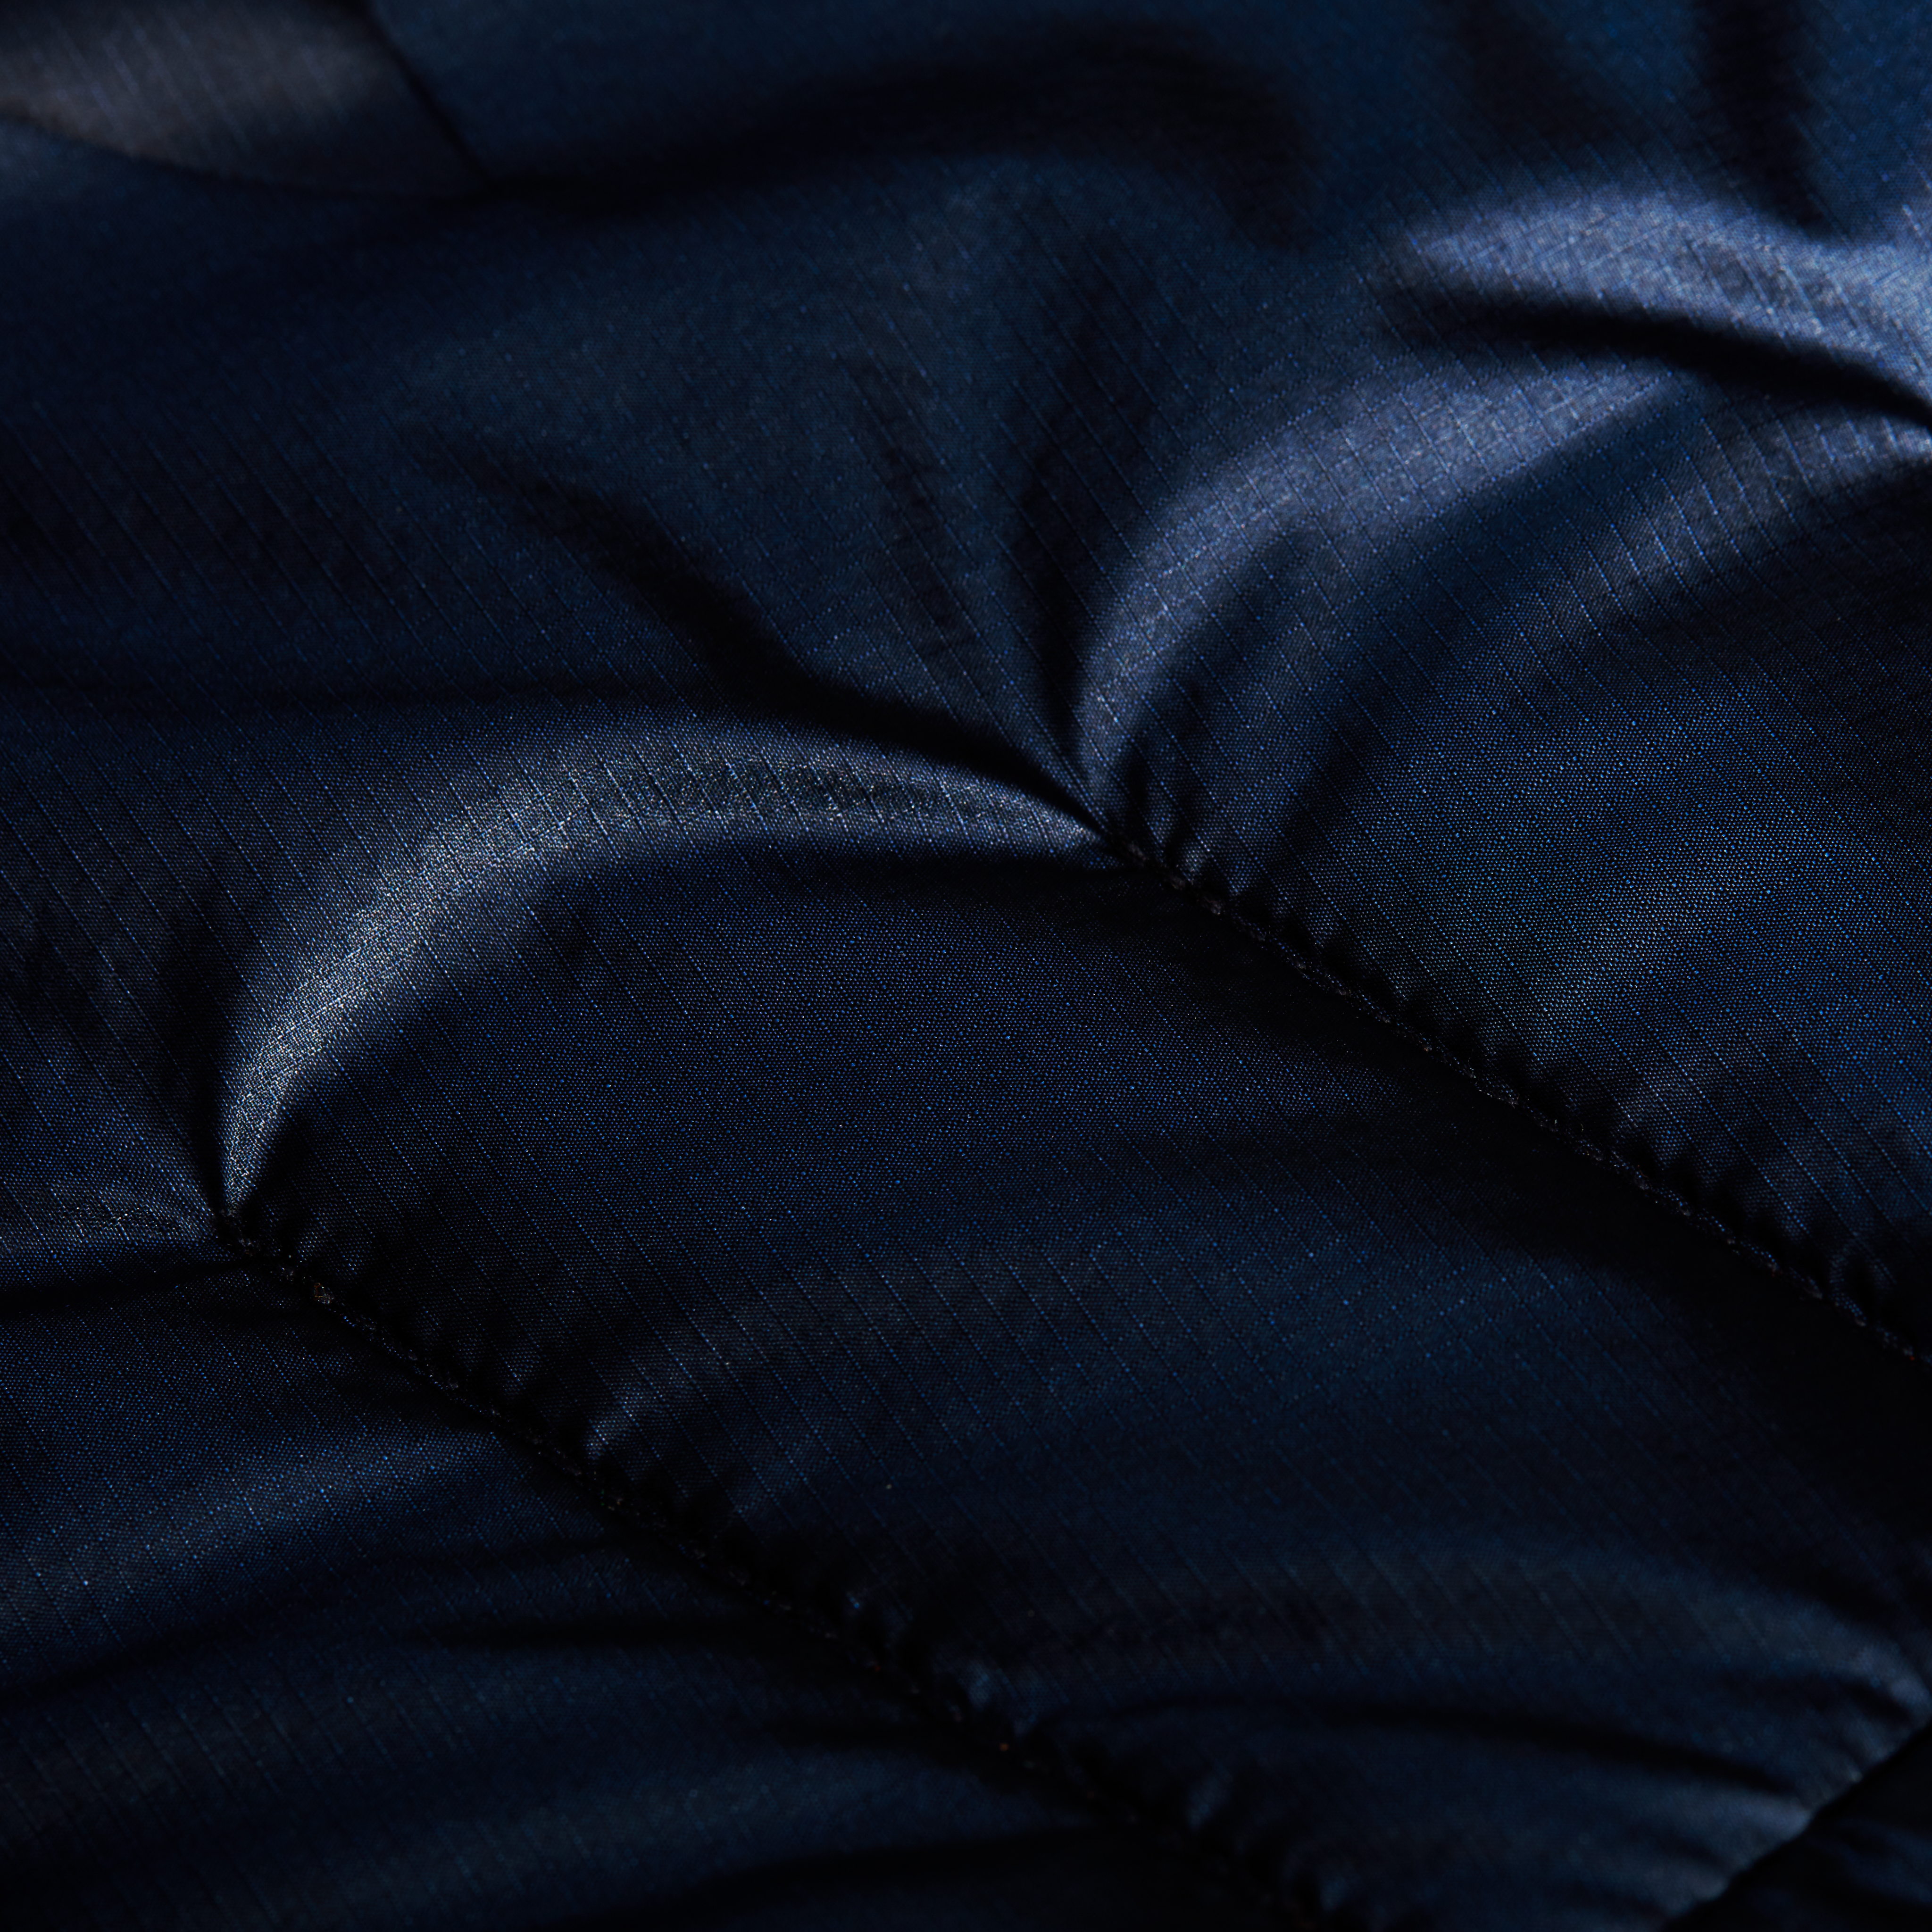 Eigerjoch Advanced IN Hooded Jacket Women product image